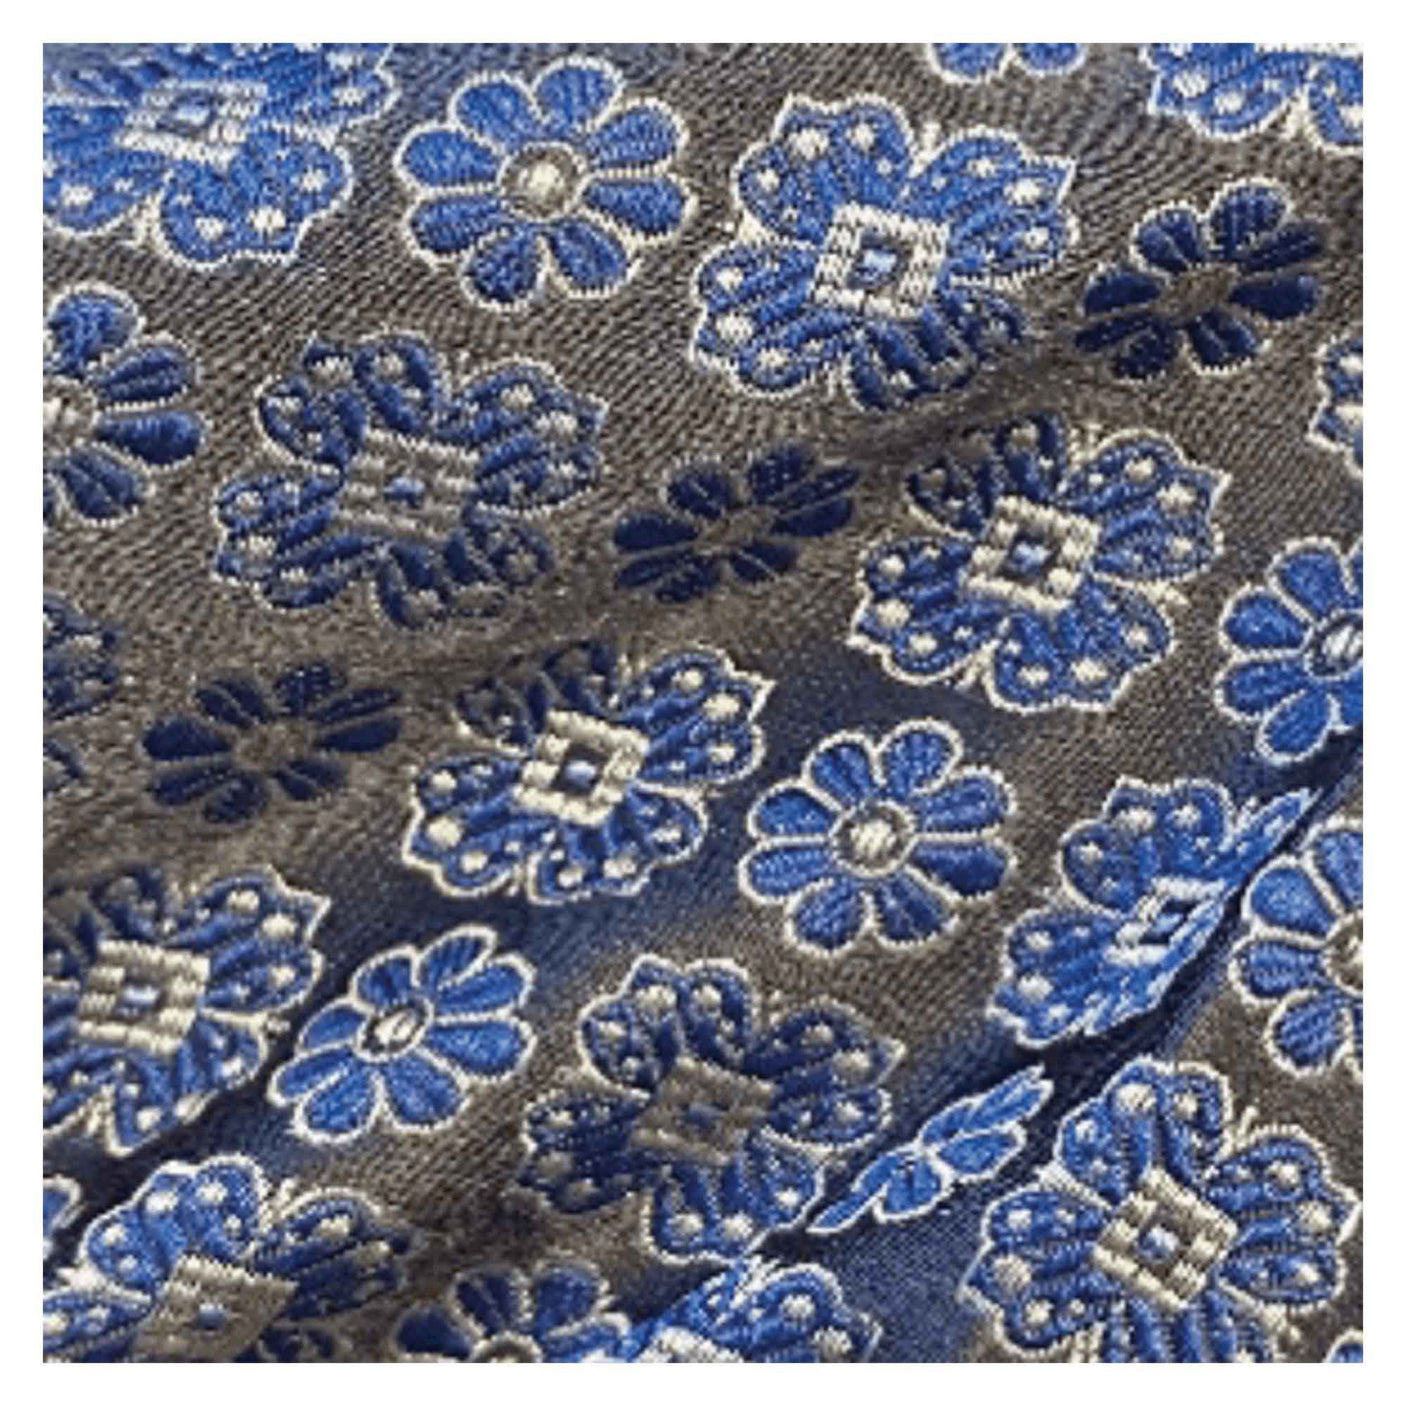 Cravate à motif floral bleu et argent